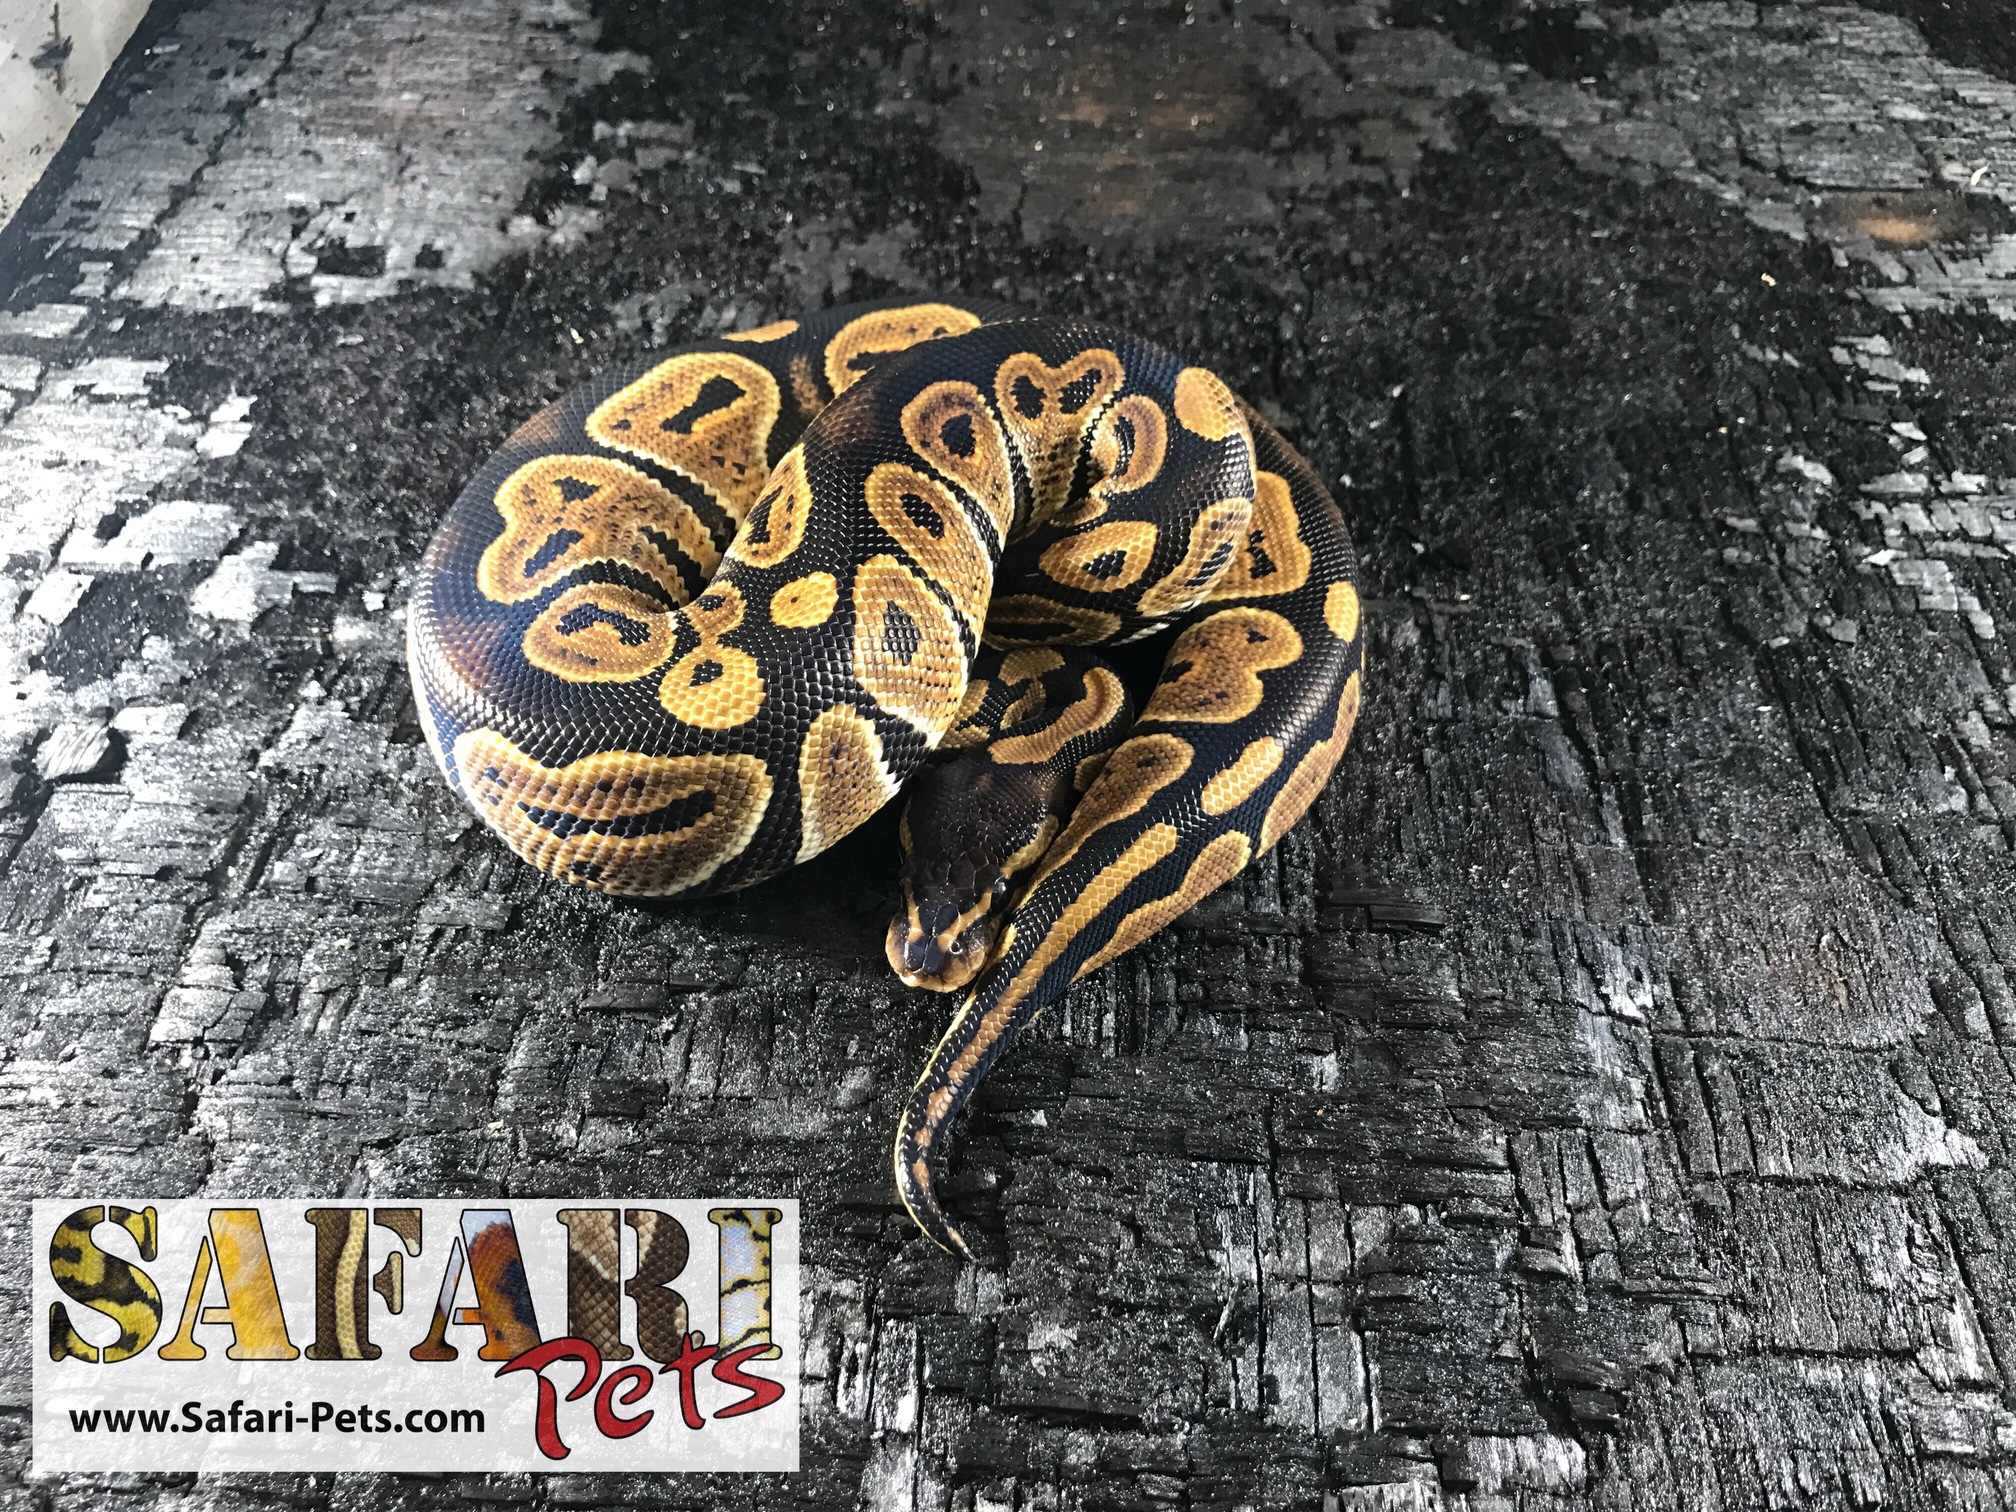 Huffman Ball Python by Safari Pets